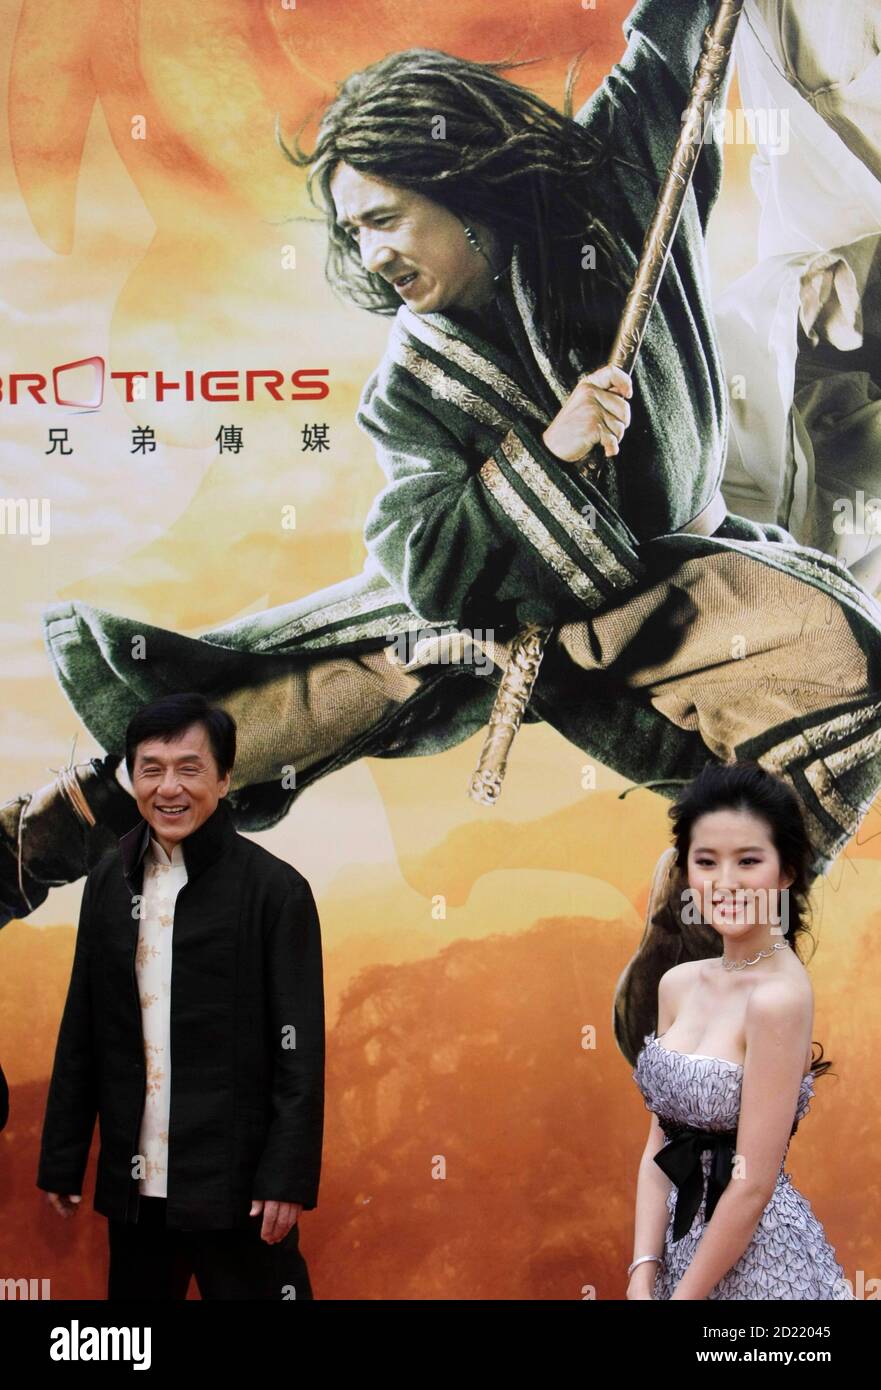 Las estrellas de cine Jackie Chan (L) y Liu Yifei asisten al estreno mundial de Beijing de su última película "el Reino prohibido" en Beijing el 16 de abril de 2008. En un raro momento de candor en Hollywood, Chan admitió que no estaba impresionado con el guión de su nueva película, "el Reino prohibido", pero la oportunidad de trabajar con la estrella de artes marciales Jet Li por primera vez lo atrajo al proyecto. REUTERS/Jason Lee (CHINA) Foto de stock